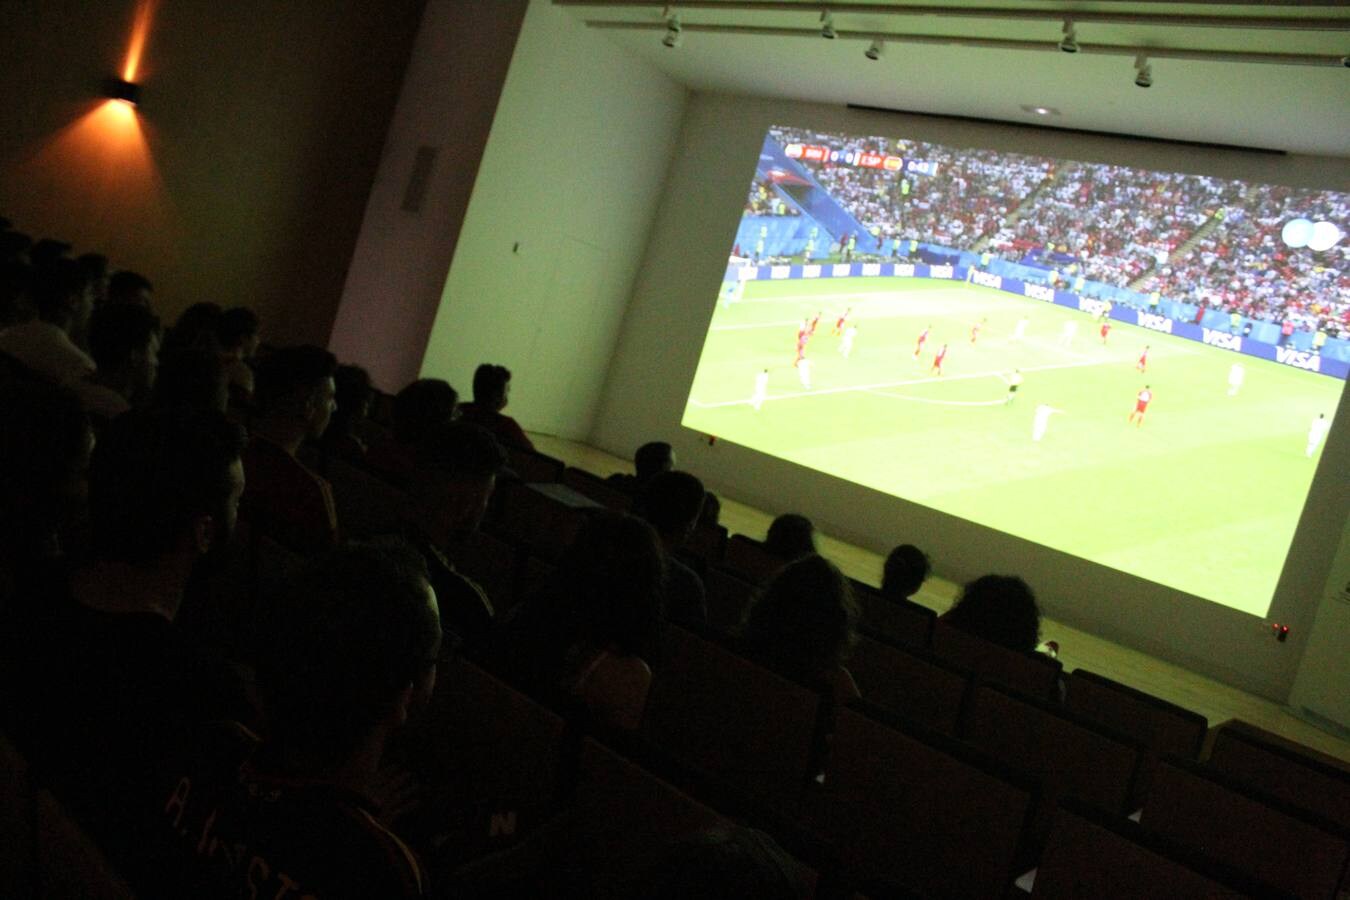 Actividades de diverso tipo y muchas ganas de fútbol. Así se se vivió el partido entre España e Irán del Mundial en las instalaciones de este espacio museístico que abre sus puertas para disfrutar del Mundial de una forma diferente.